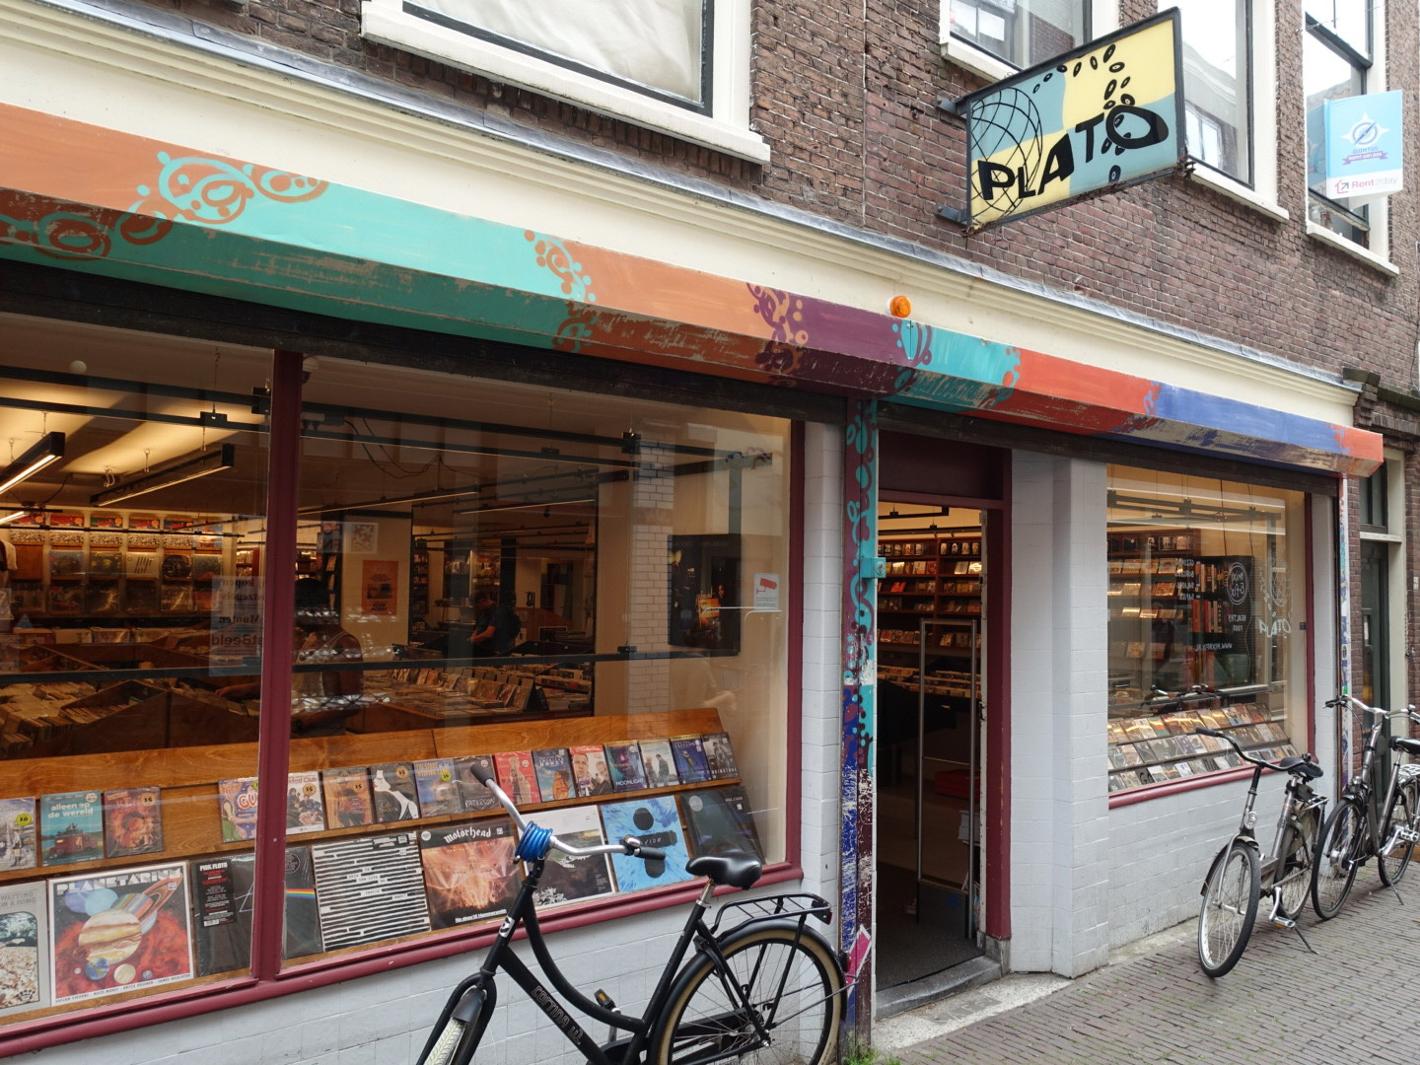 Foto Plato Leiden in Leiden, Winkelen, Hobby & vrije tijd - #2